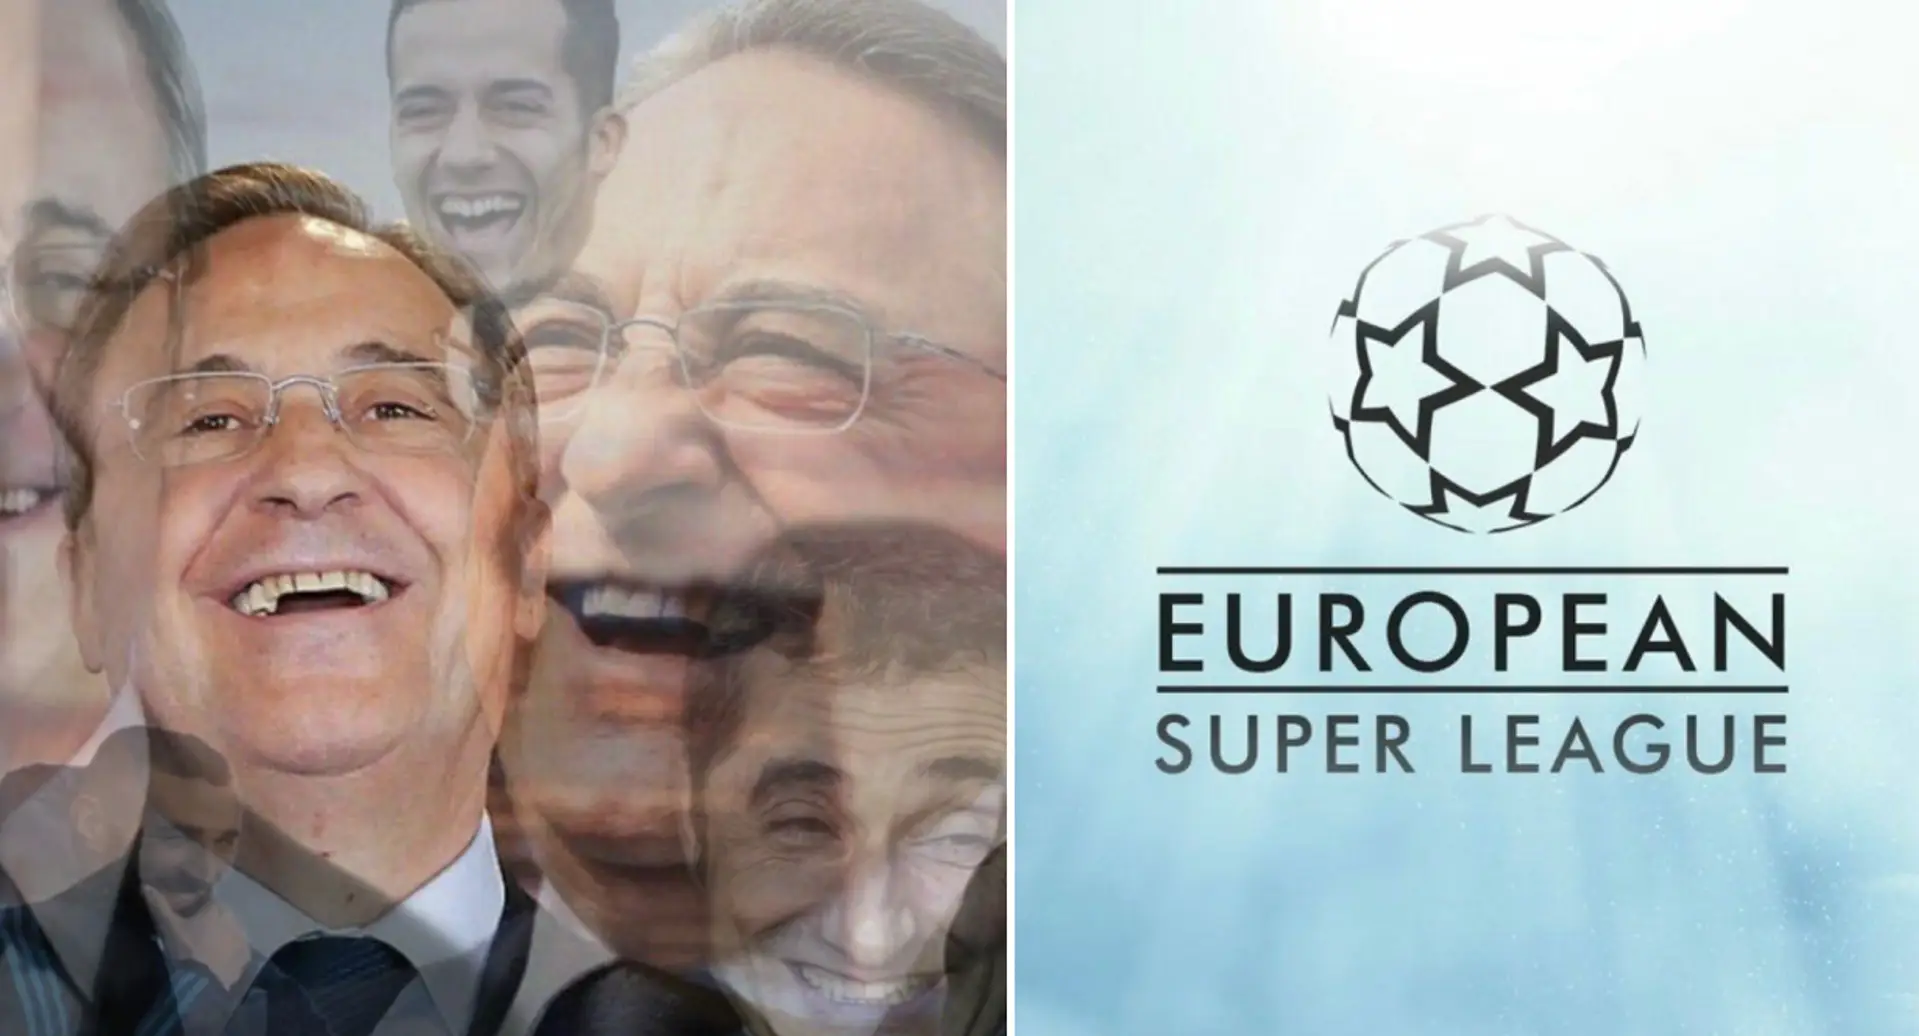 La Superliga europea puede tener un nuevo comienzo tras tribunal fallara contra las restricciones de la UEFA y la FIFA